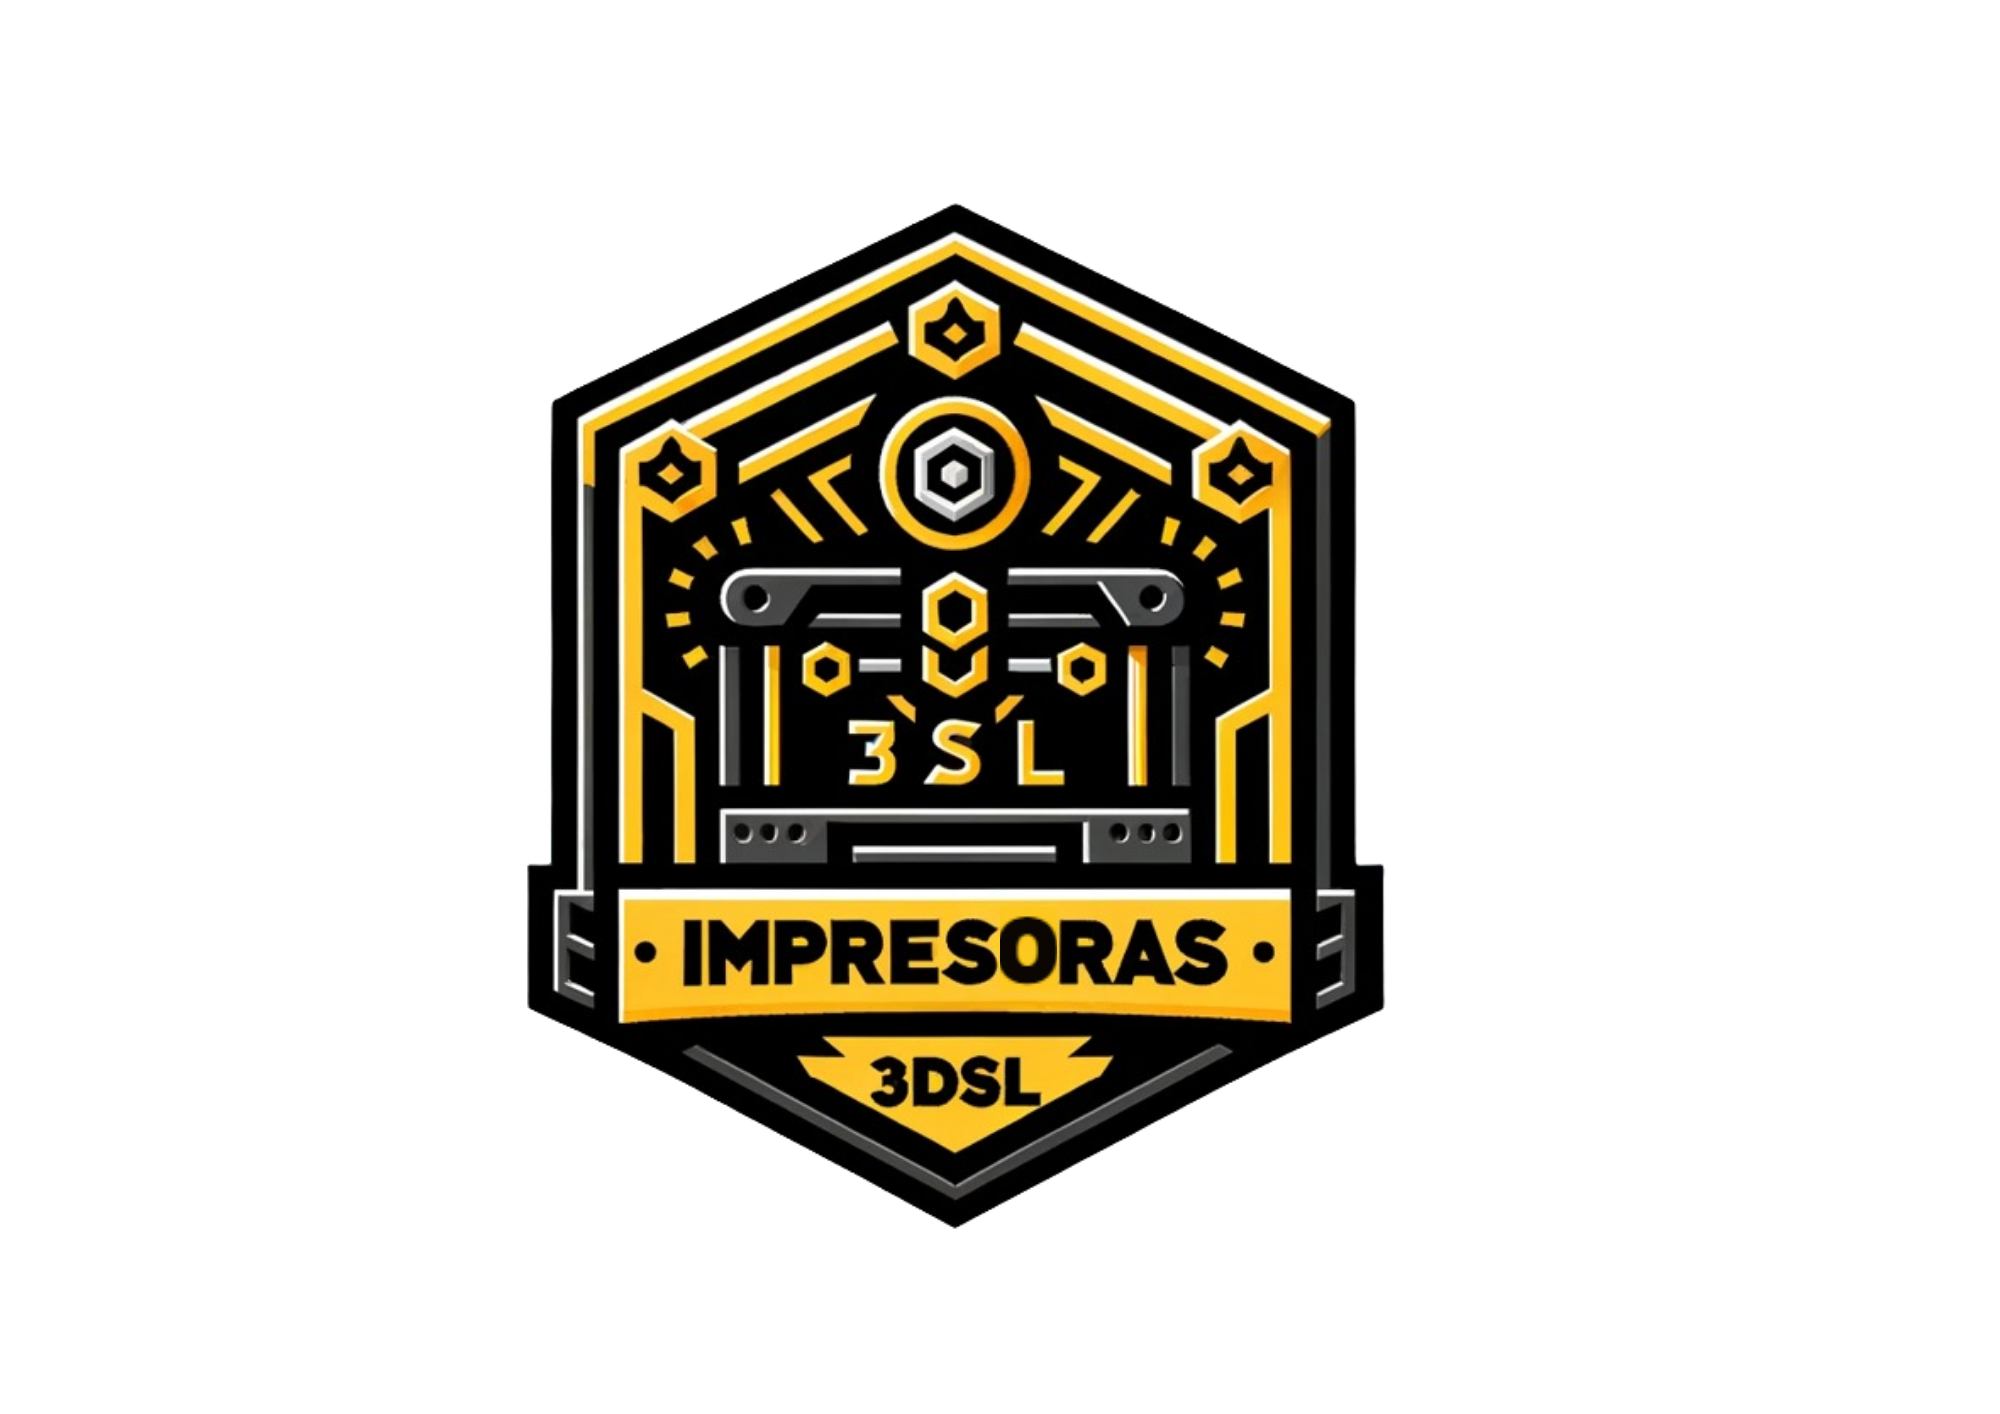 IMPRESORAS 3DSL